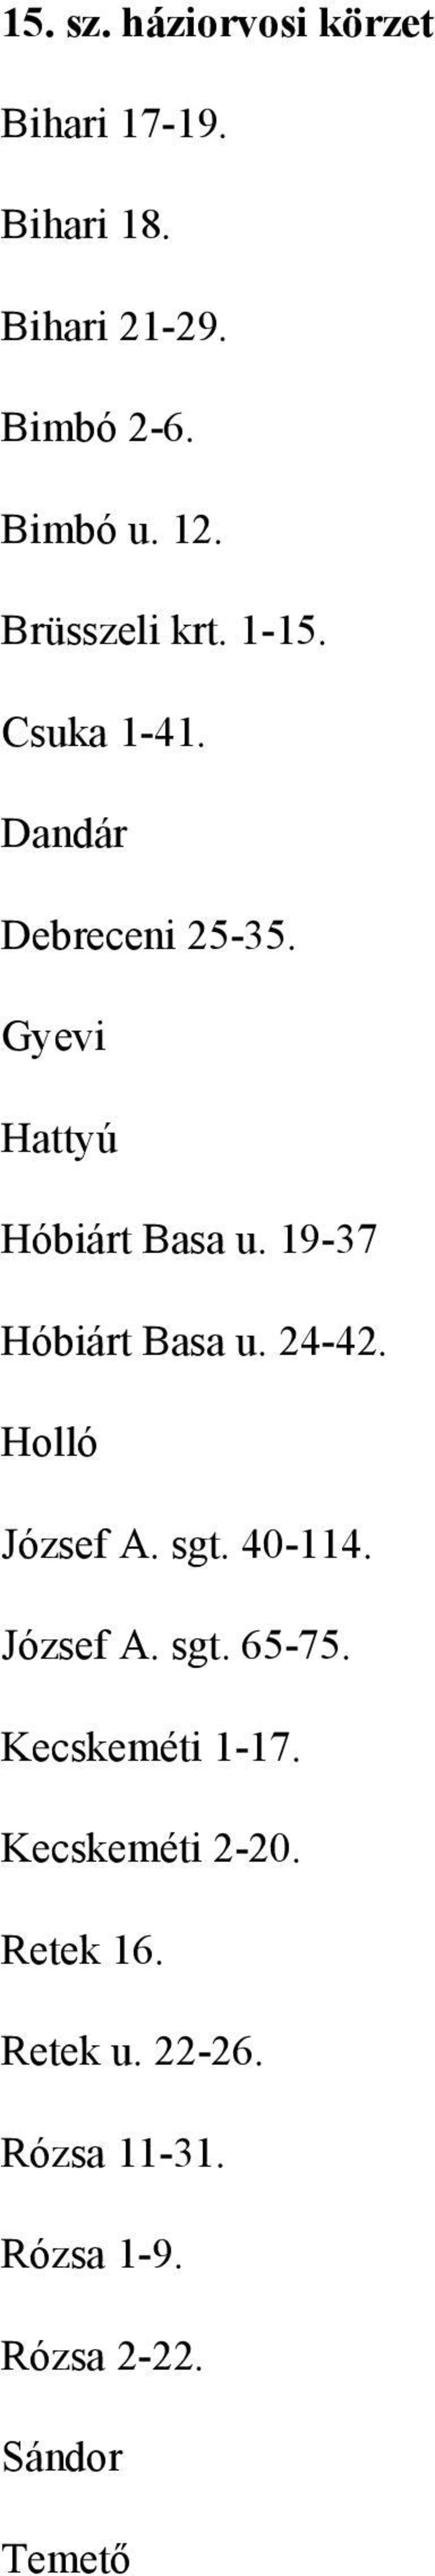 19-37 Hóbiárt Basa u. 24-42. Holló József A. sgt. 40-114. József A. sgt. 65-75.